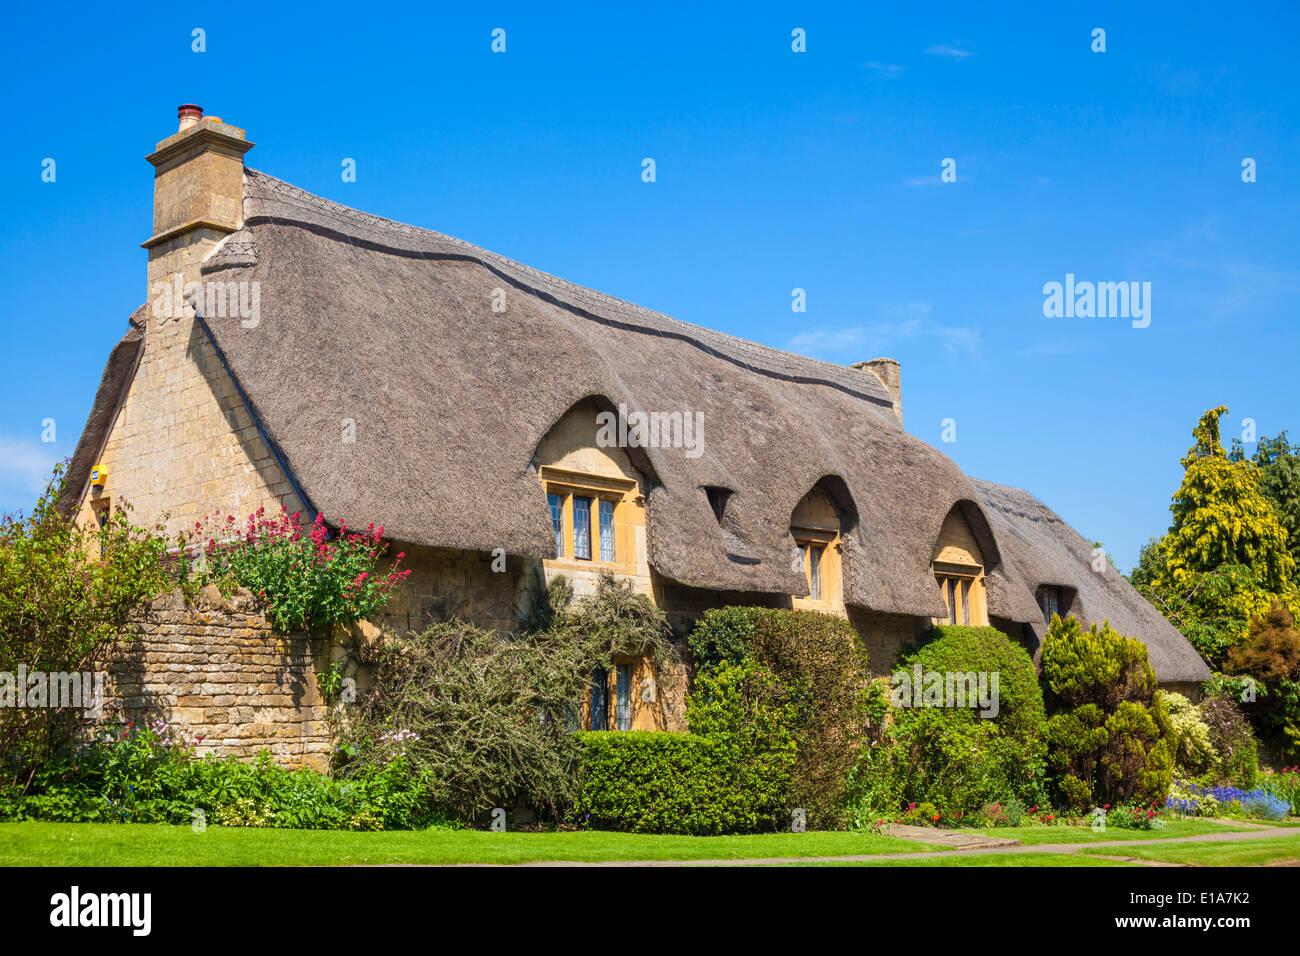 In Cotswolds cottage con il tetto di paglia, Chipping Campden, Cotswolds, Gloucestershire, England, Regno Unito e Unione europea, Europa Foto Stock